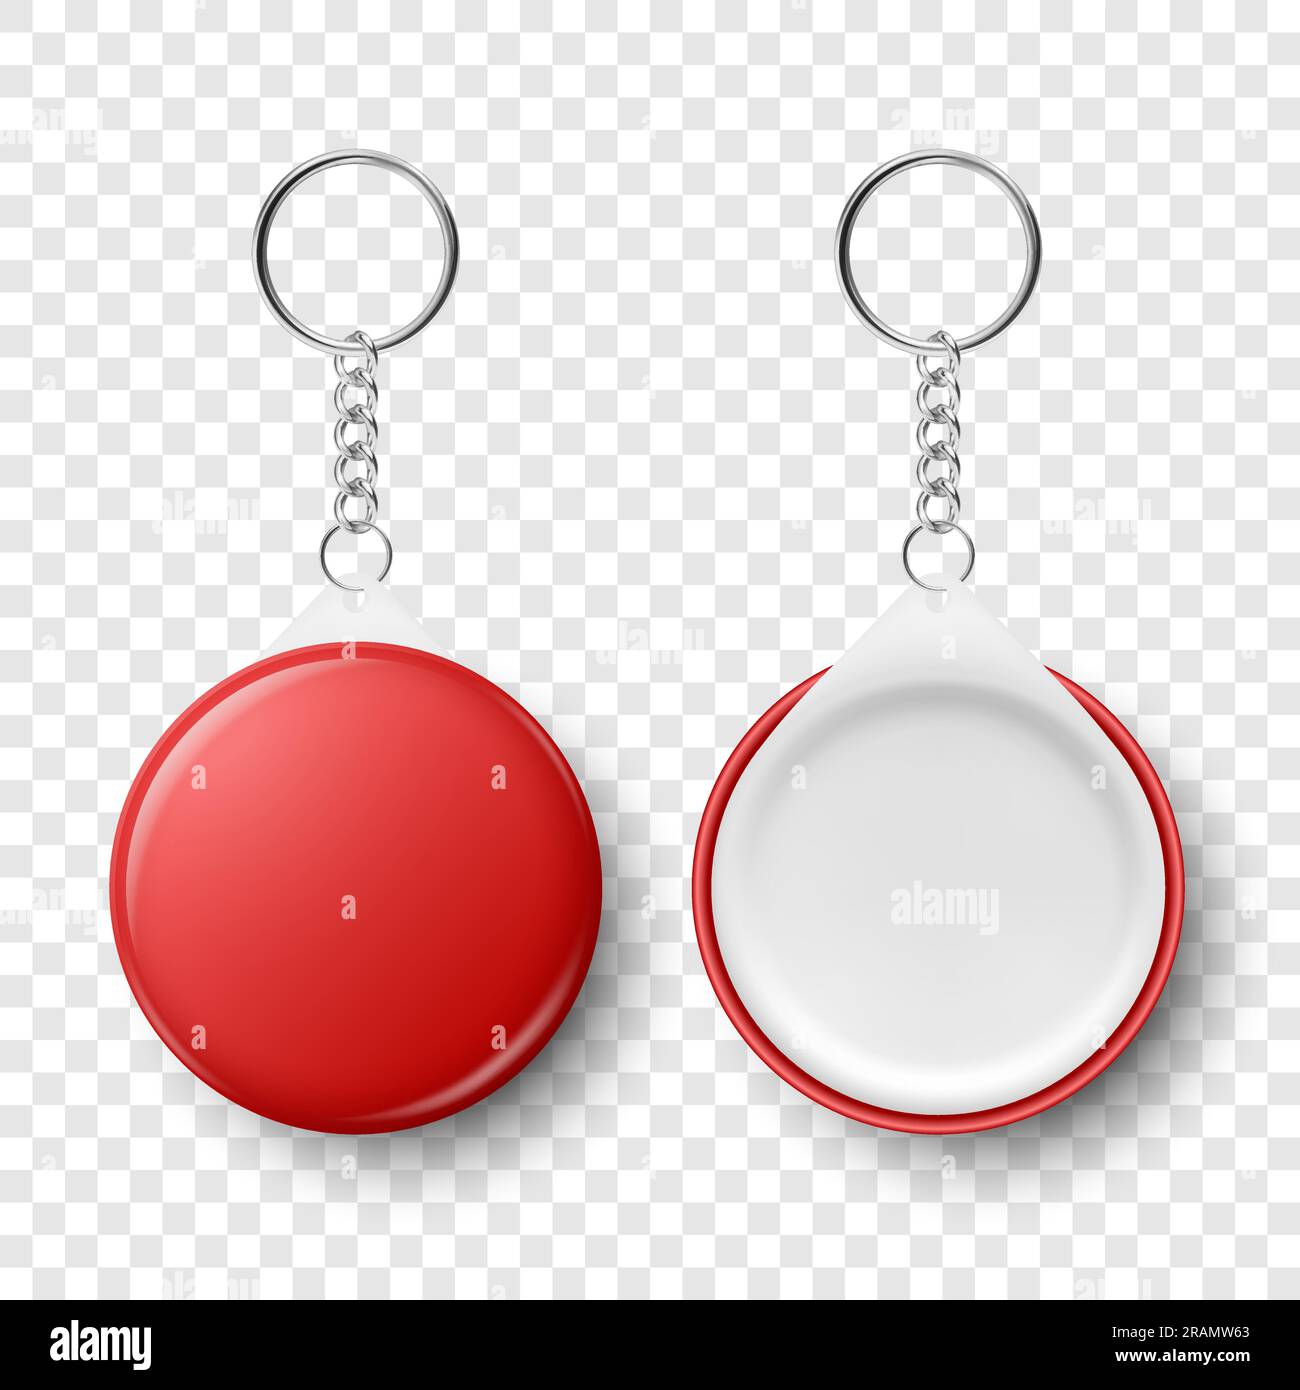 Vector 3D realistischer, roter, runder Schlüsselanhänger mit Ring und Kette  für Schlüsselisolierung. Knopfaufkleber mit Ring. Kennzeichnungsschild aus  Kunststoff, Metall, mit Kettentaste Stock-Vektorgrafik - Alamy